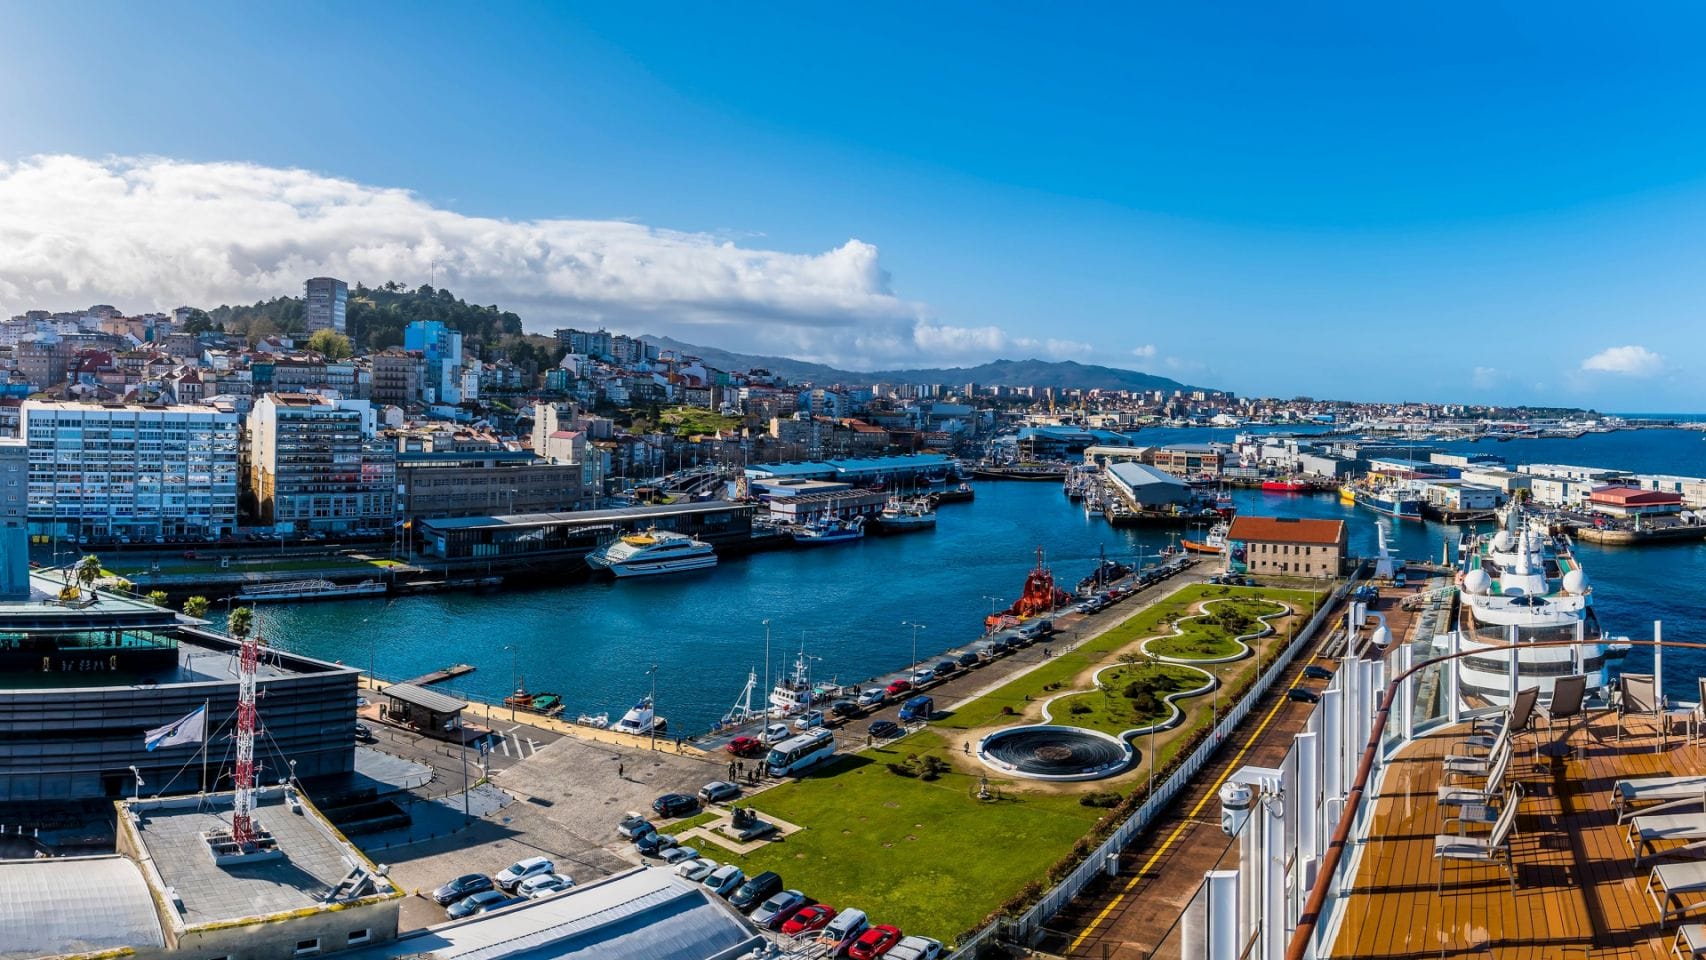 Vista panorámica de la ciudad de Vigo.